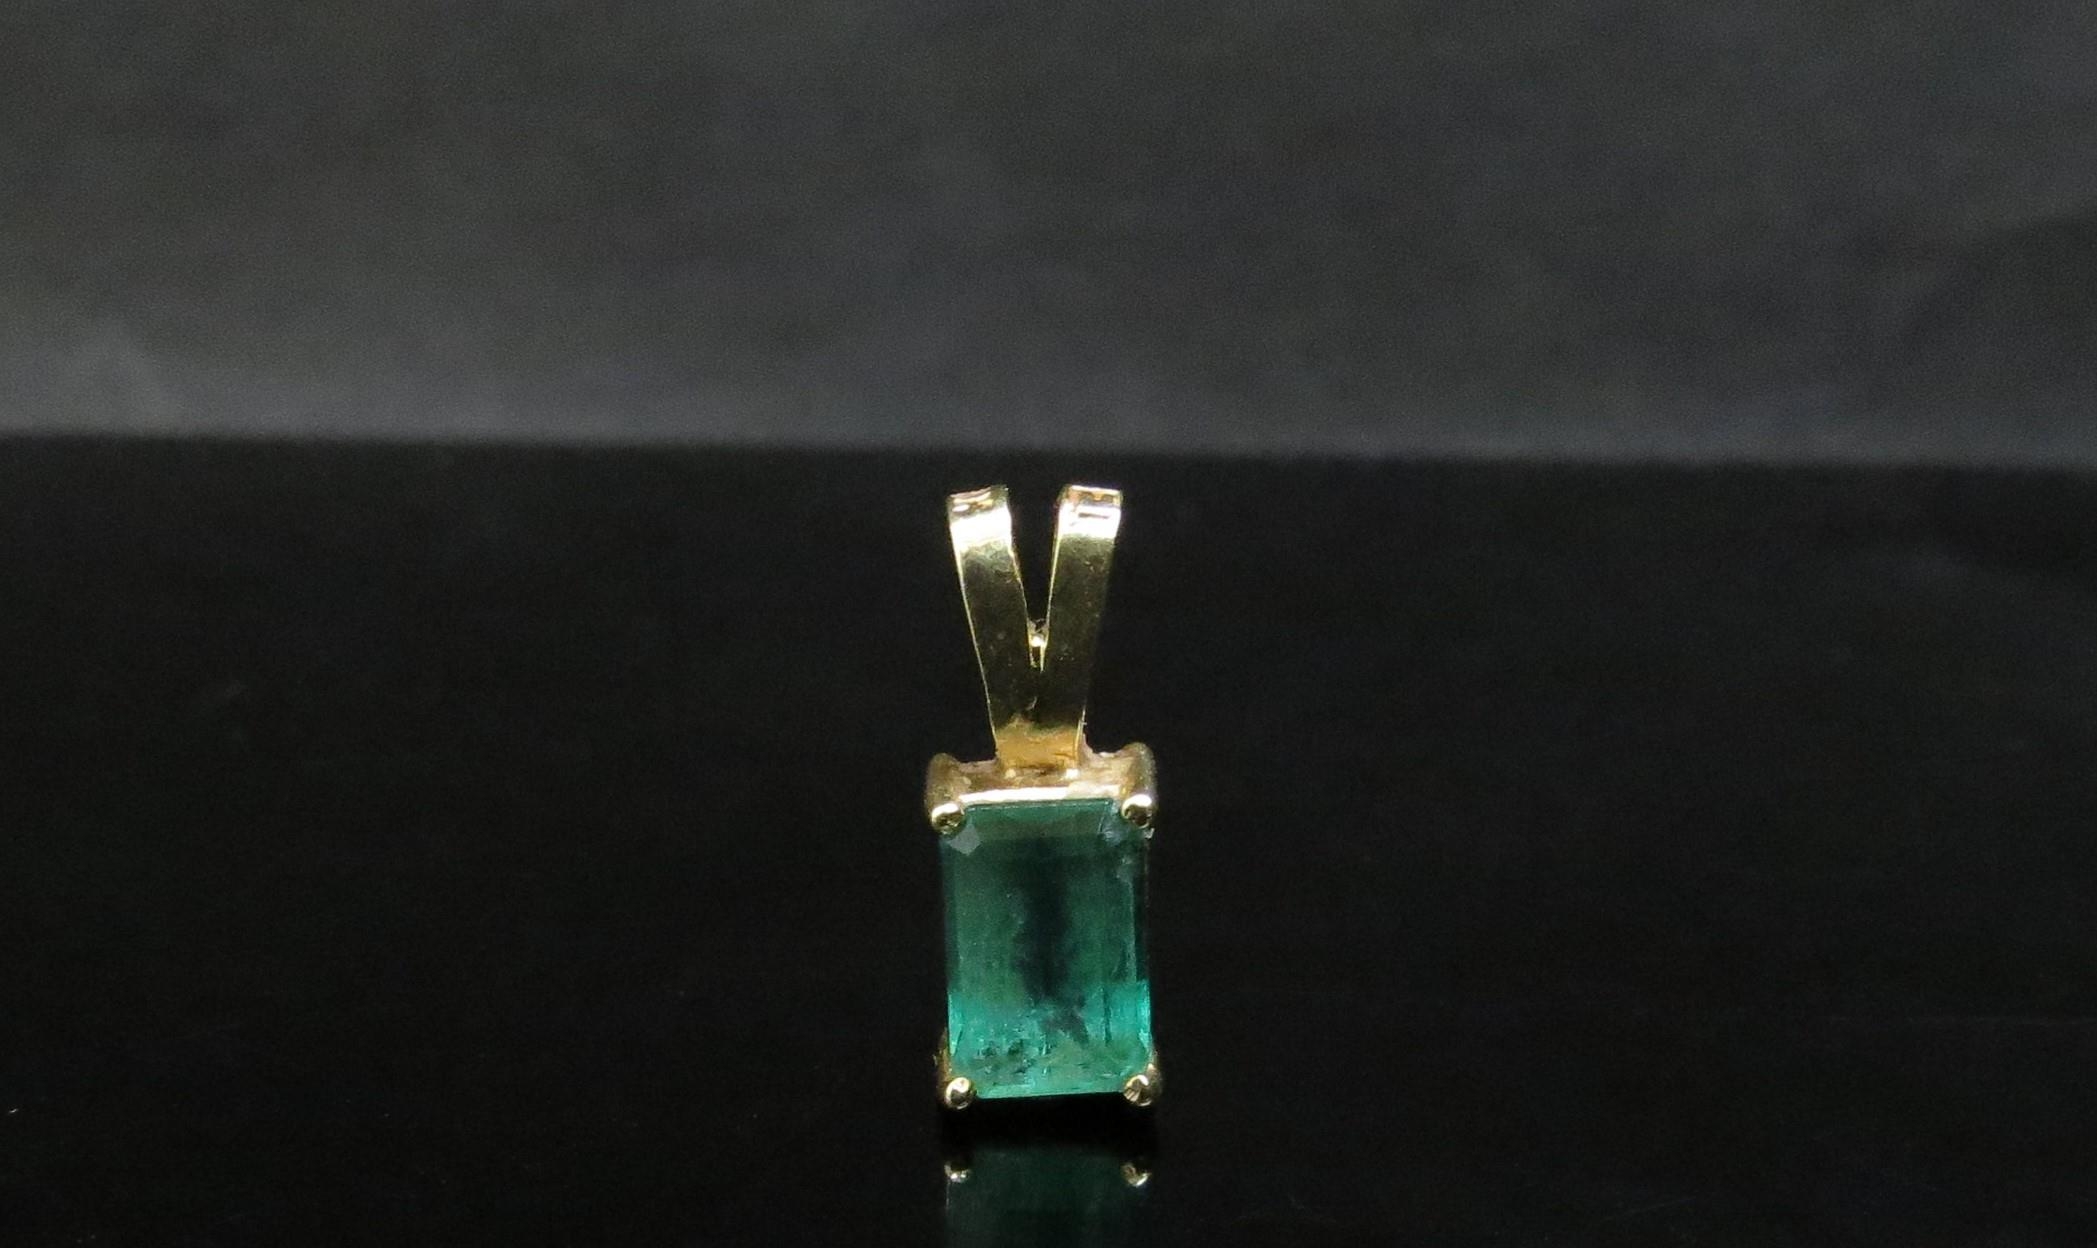 An 18ct gold emerald pendant 8mm x 5mm emerald, 1.4g